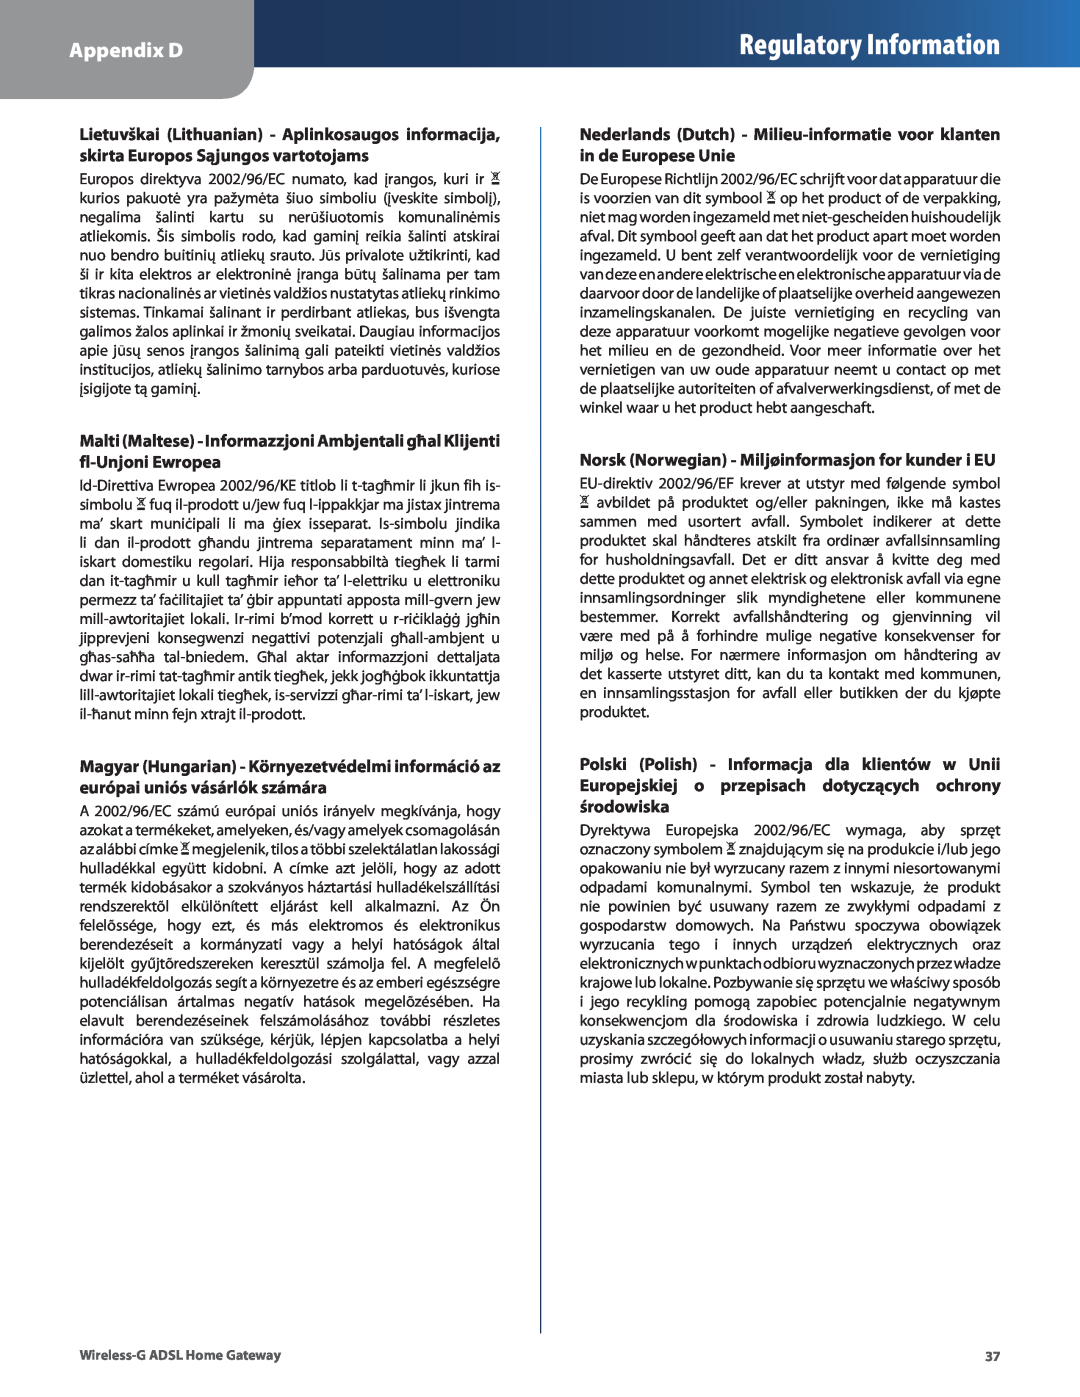 Linksys WAG200G Regulatory Information, Appendix D, Nederlands Dutch - Milieu-informatie voor klanten in de Europese Unie 